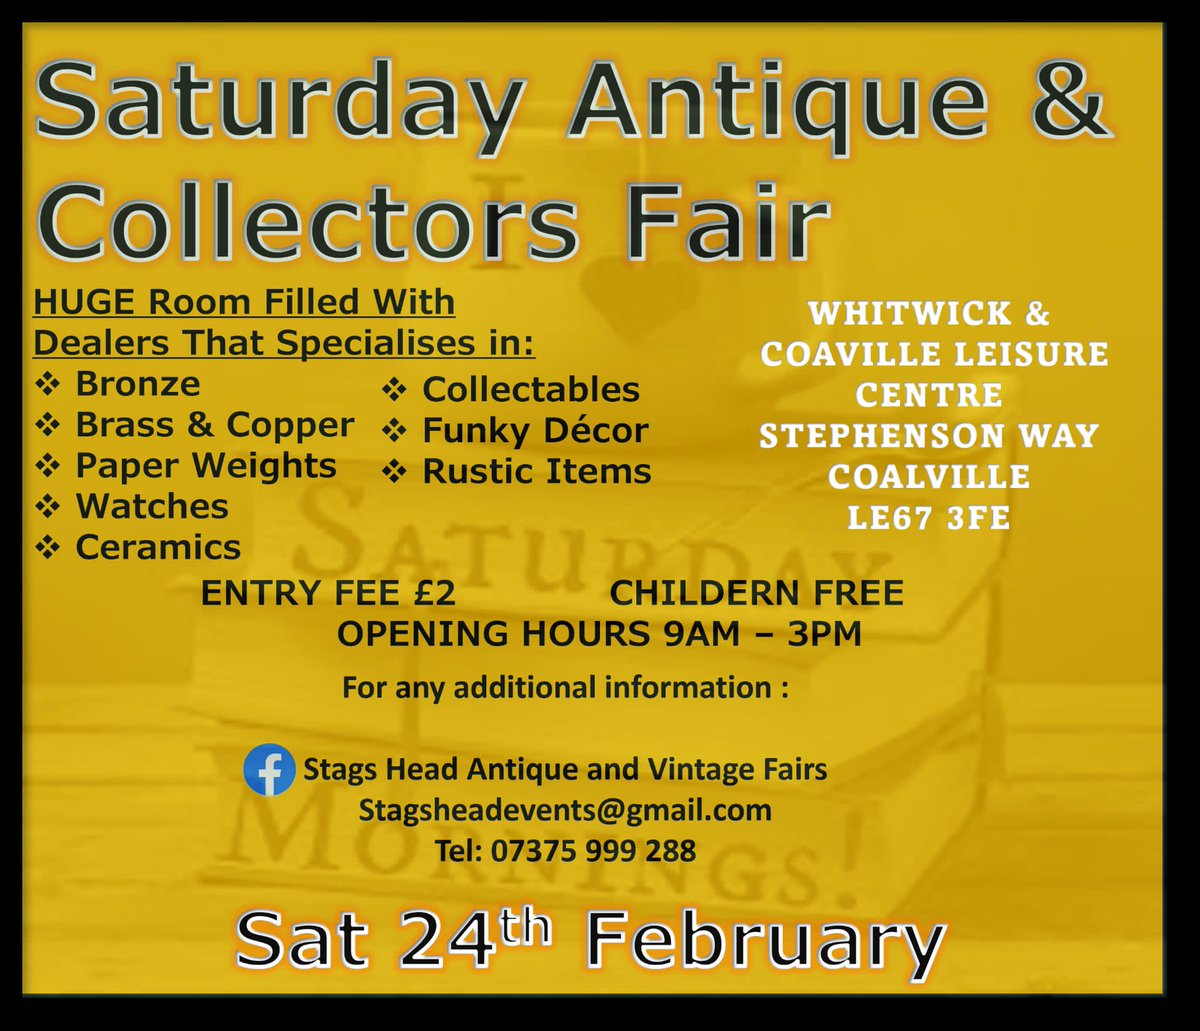 Next this Saturday @antiques_atlas